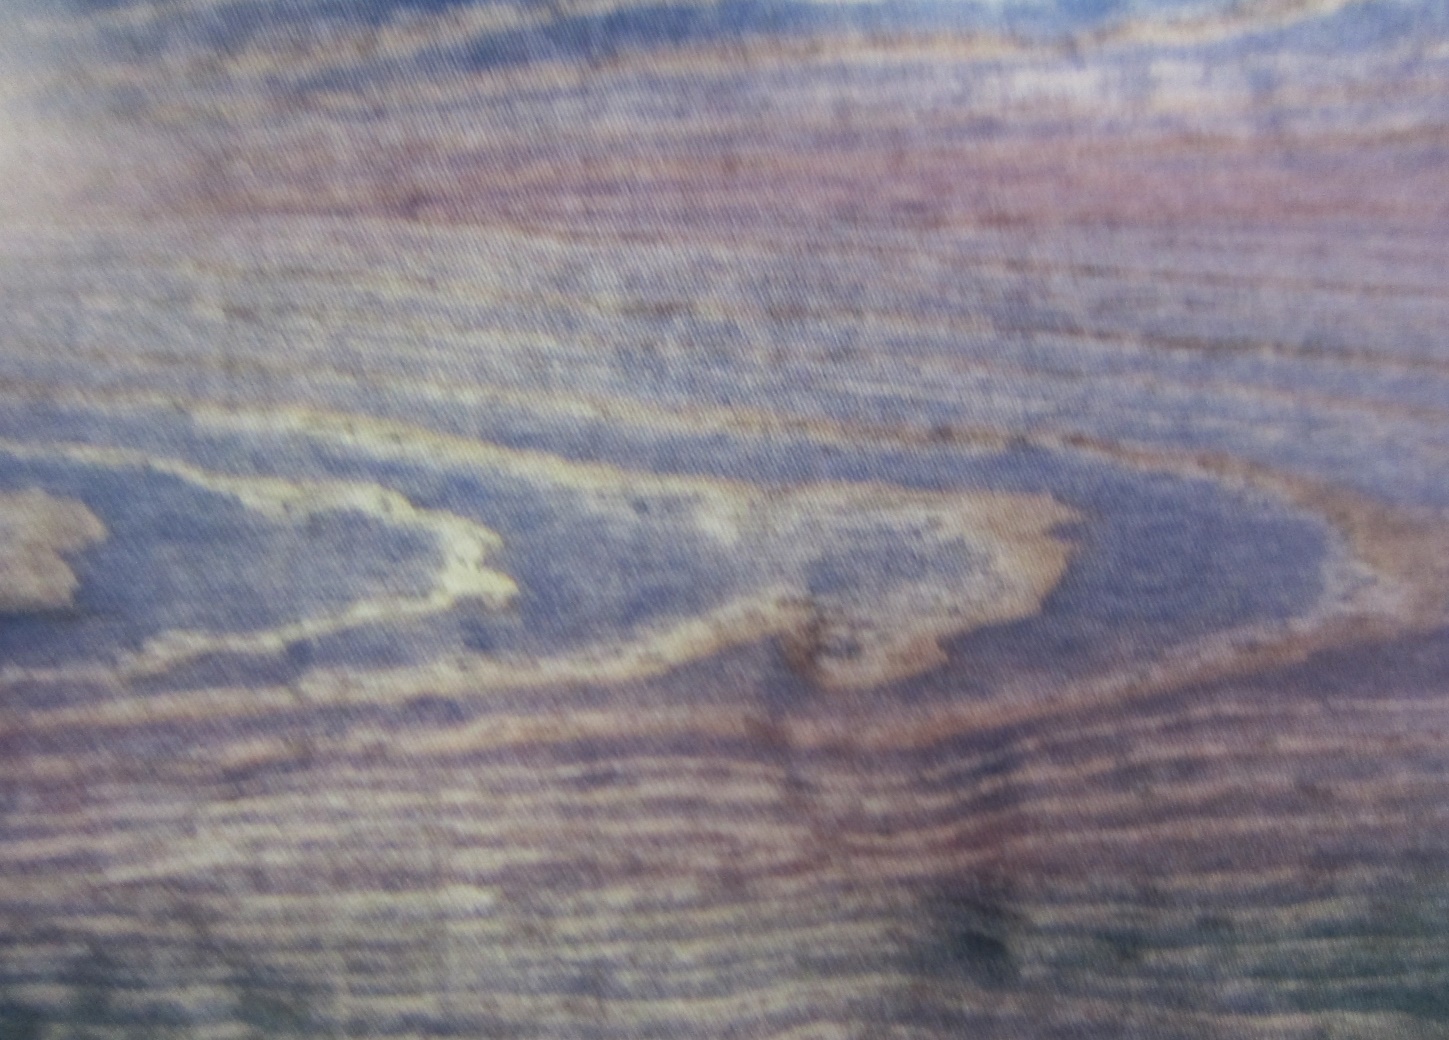 Окраска поверхности под ценные породы дерева